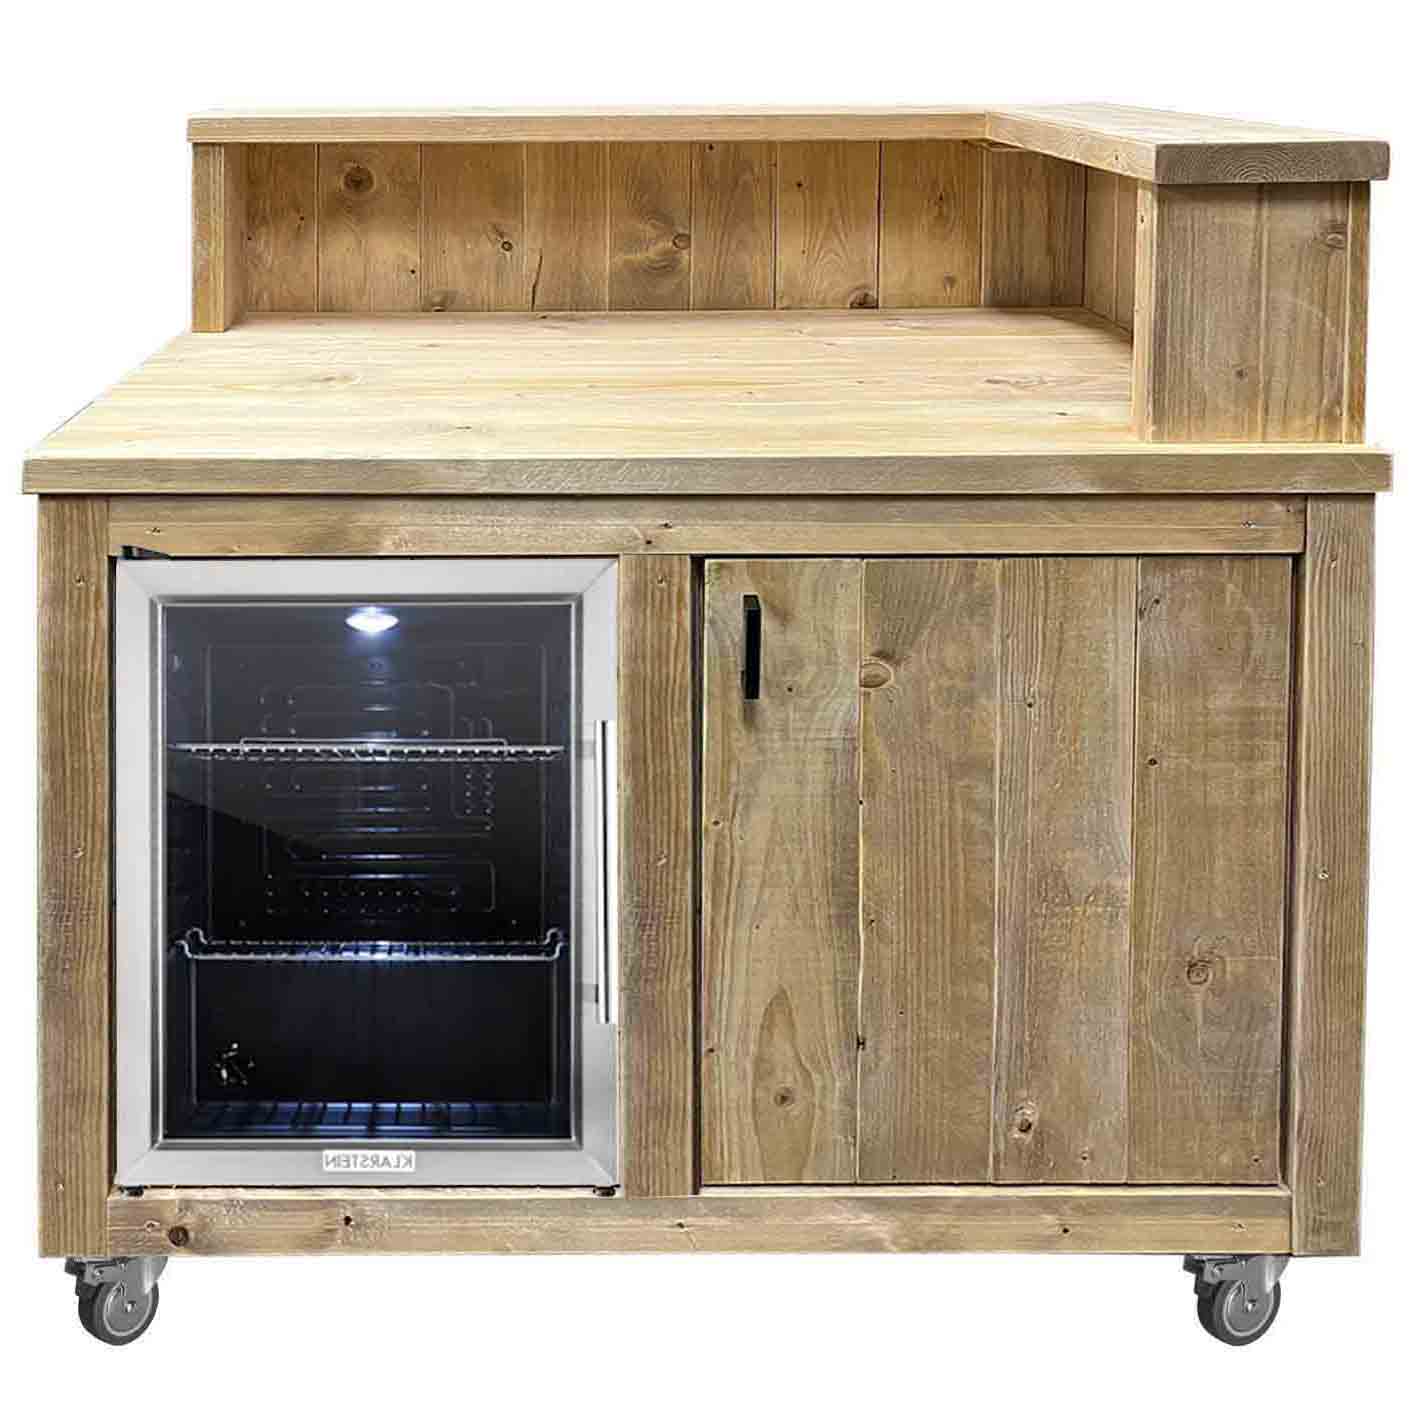 Bauholz Style: Grilltisch - Outdoorküchen Kühlschrank Modul - "PERTHONE KITCHEN"